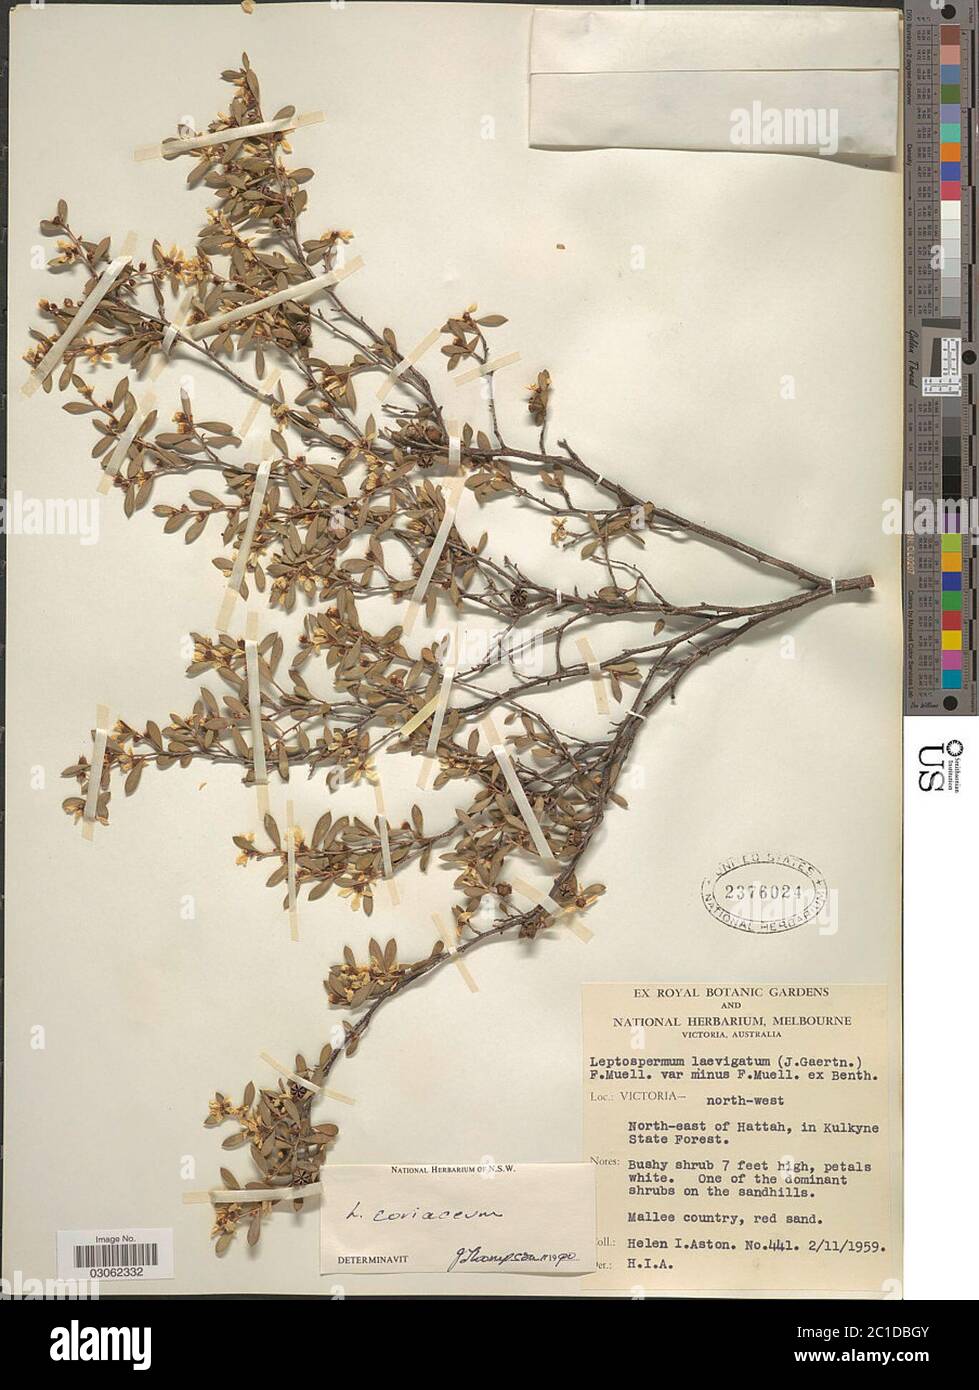 Leptospermum coriaceum F Muell ex Miq Cheel Leptospermum coriaceum F Muell ex Miq Cheel. Stock Photo